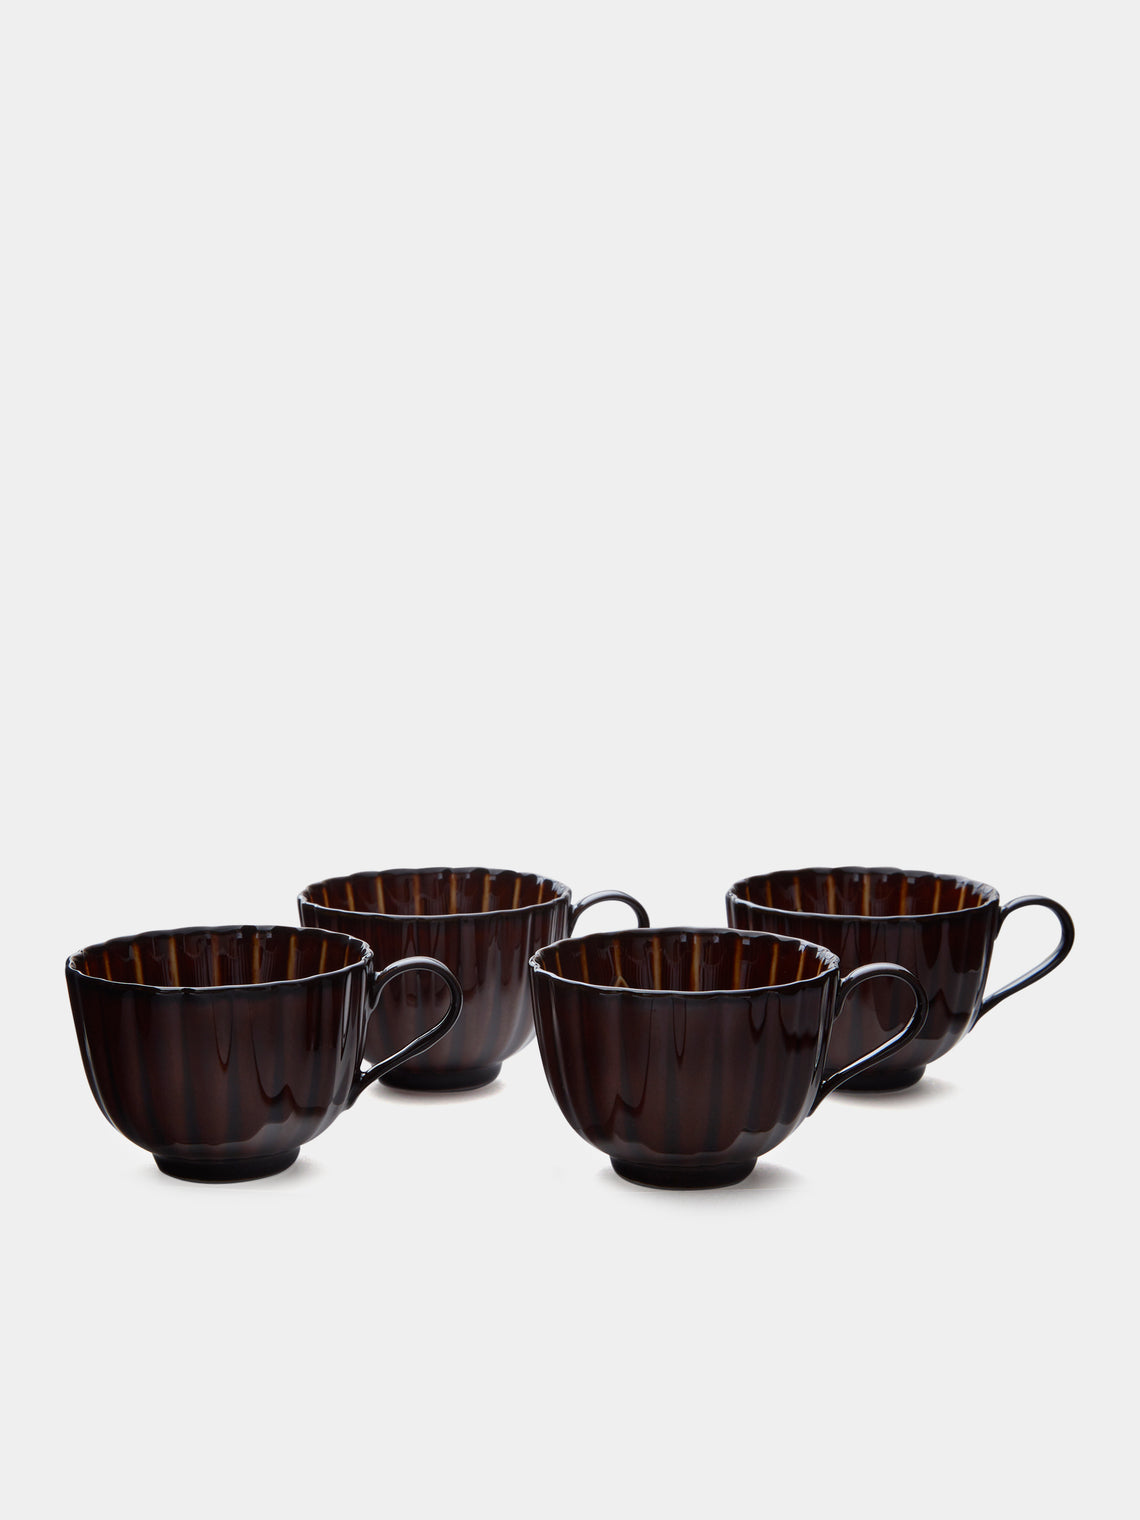 Kaneko Kohyo - Giyaman Urushi Ceramic Coffee Cups (Set of 4) - Brown - ABASK